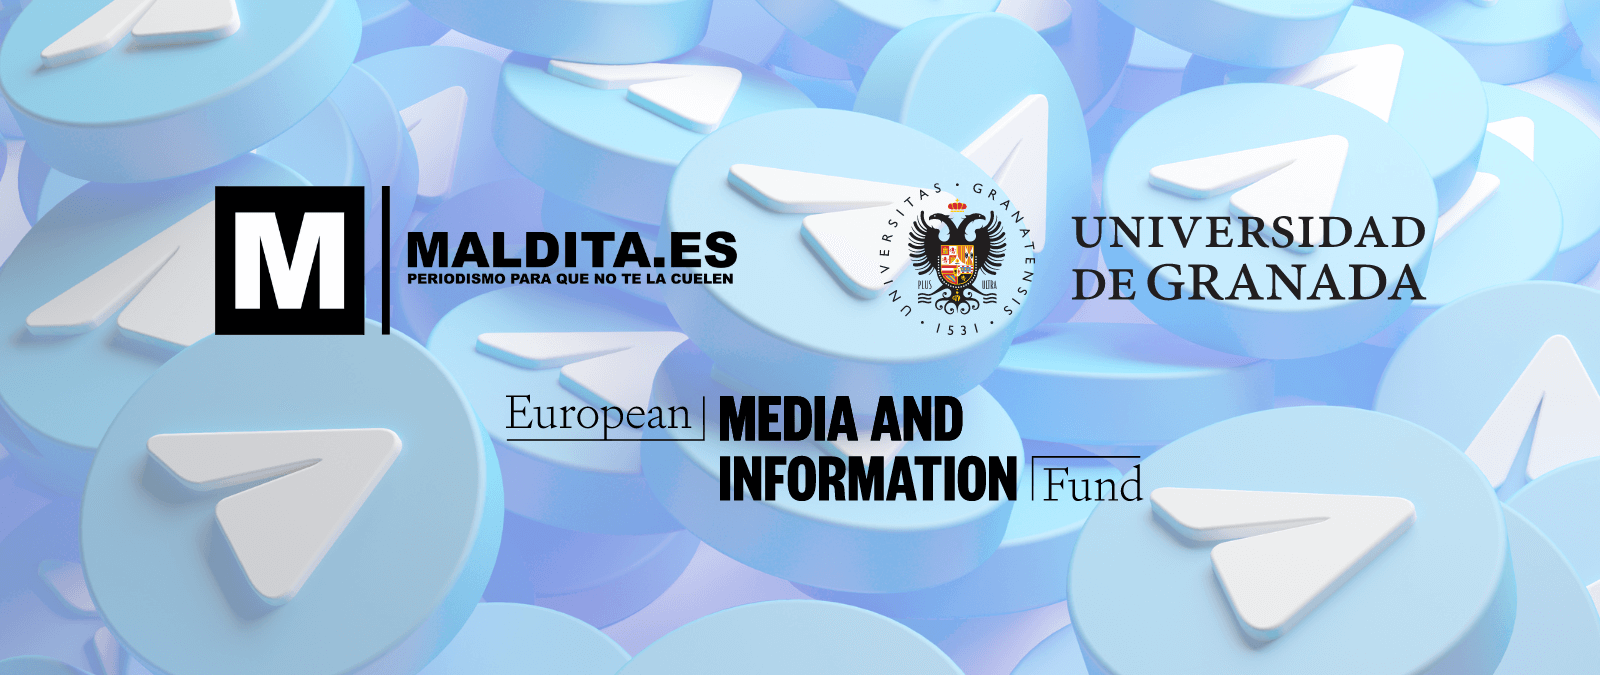 Maldita.es y la Universidad de Granada ganan una beca del European Media & Information Fund para investigar las dinámicas de desinformación en Telegram